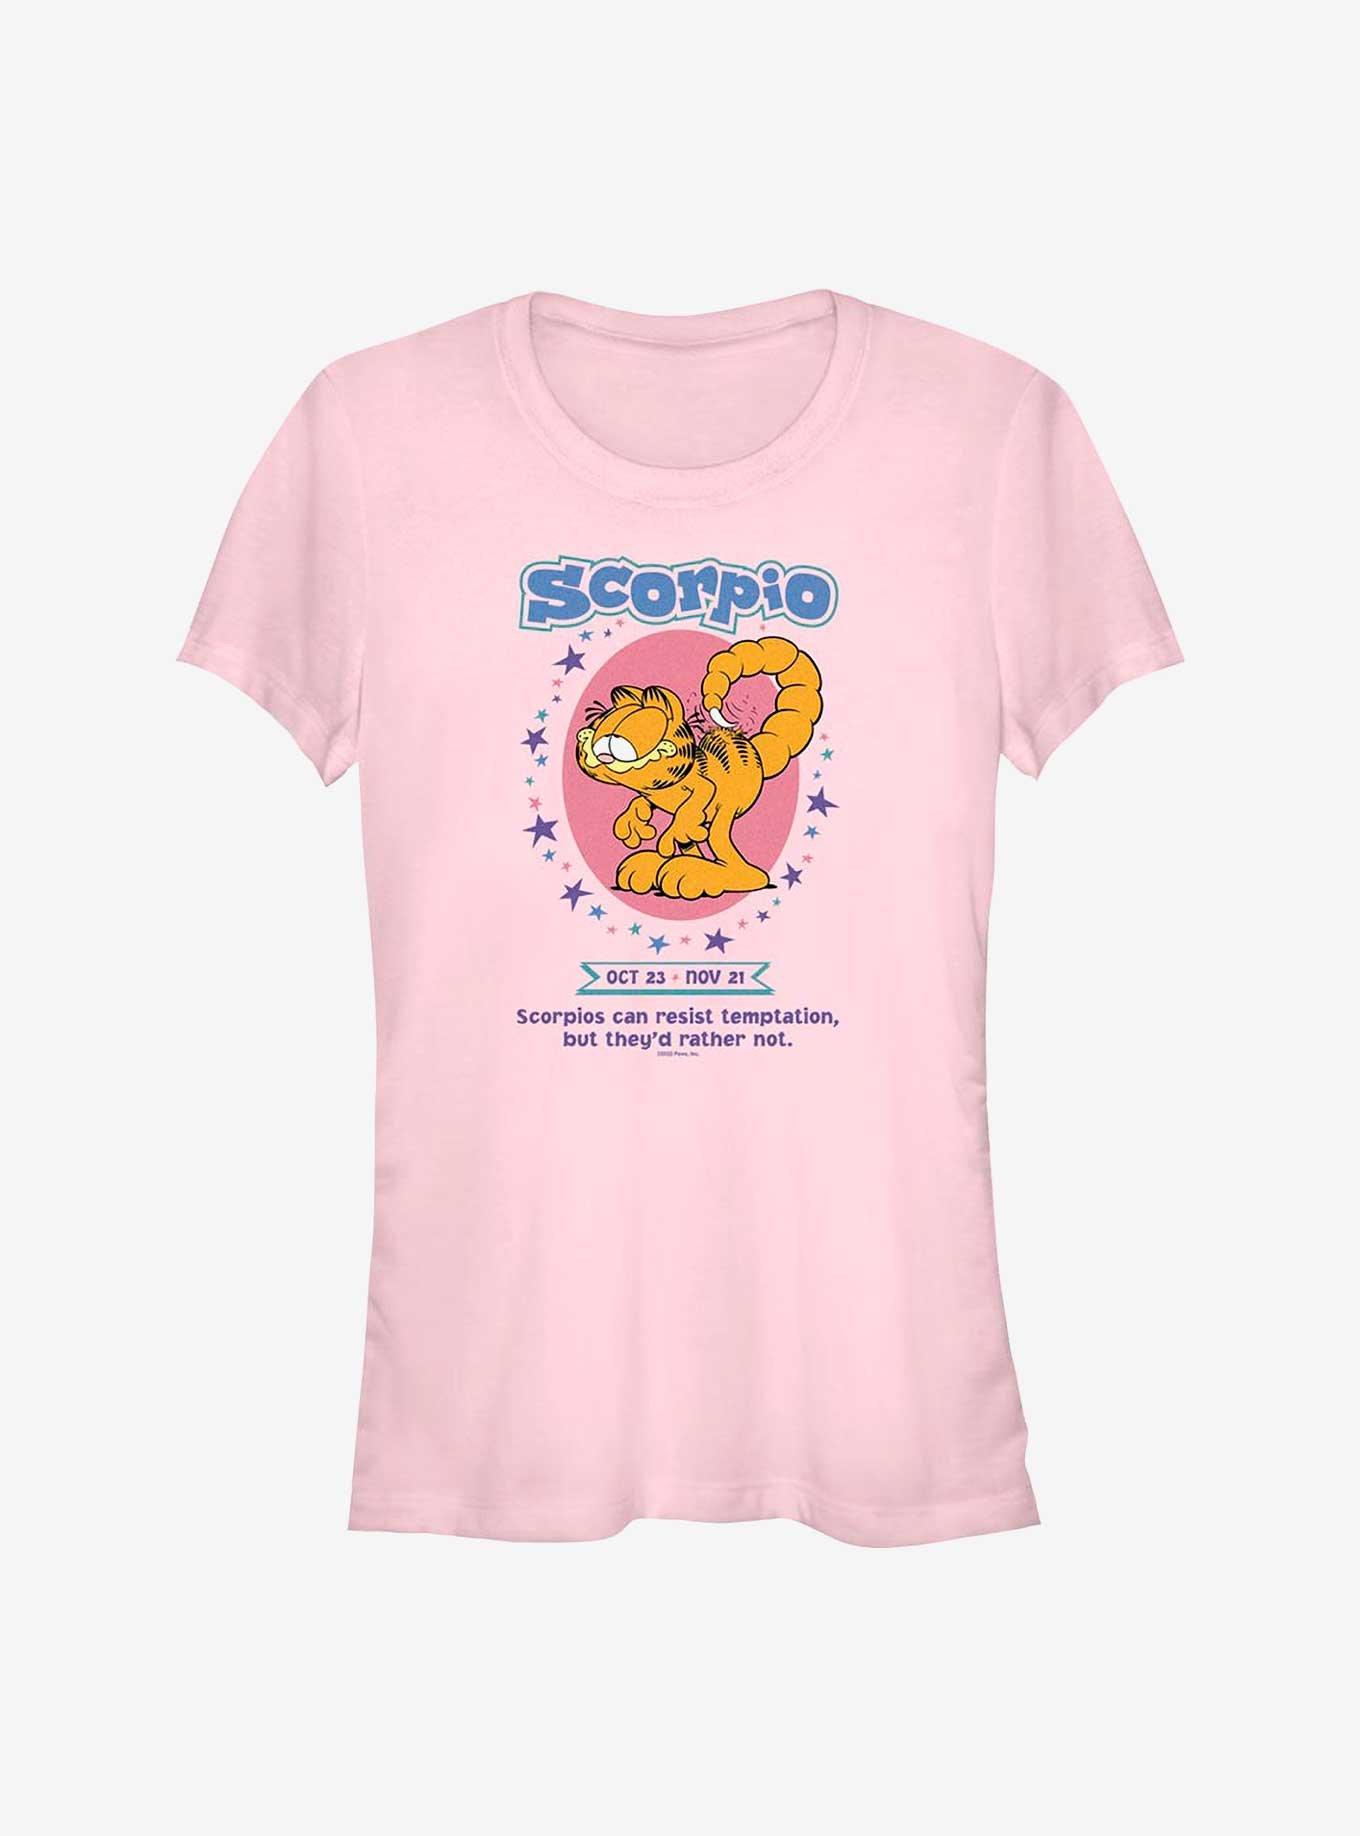 Garfield Scorpio Horoscope Girls T-Shirt, LIGHT PINK, hi-res